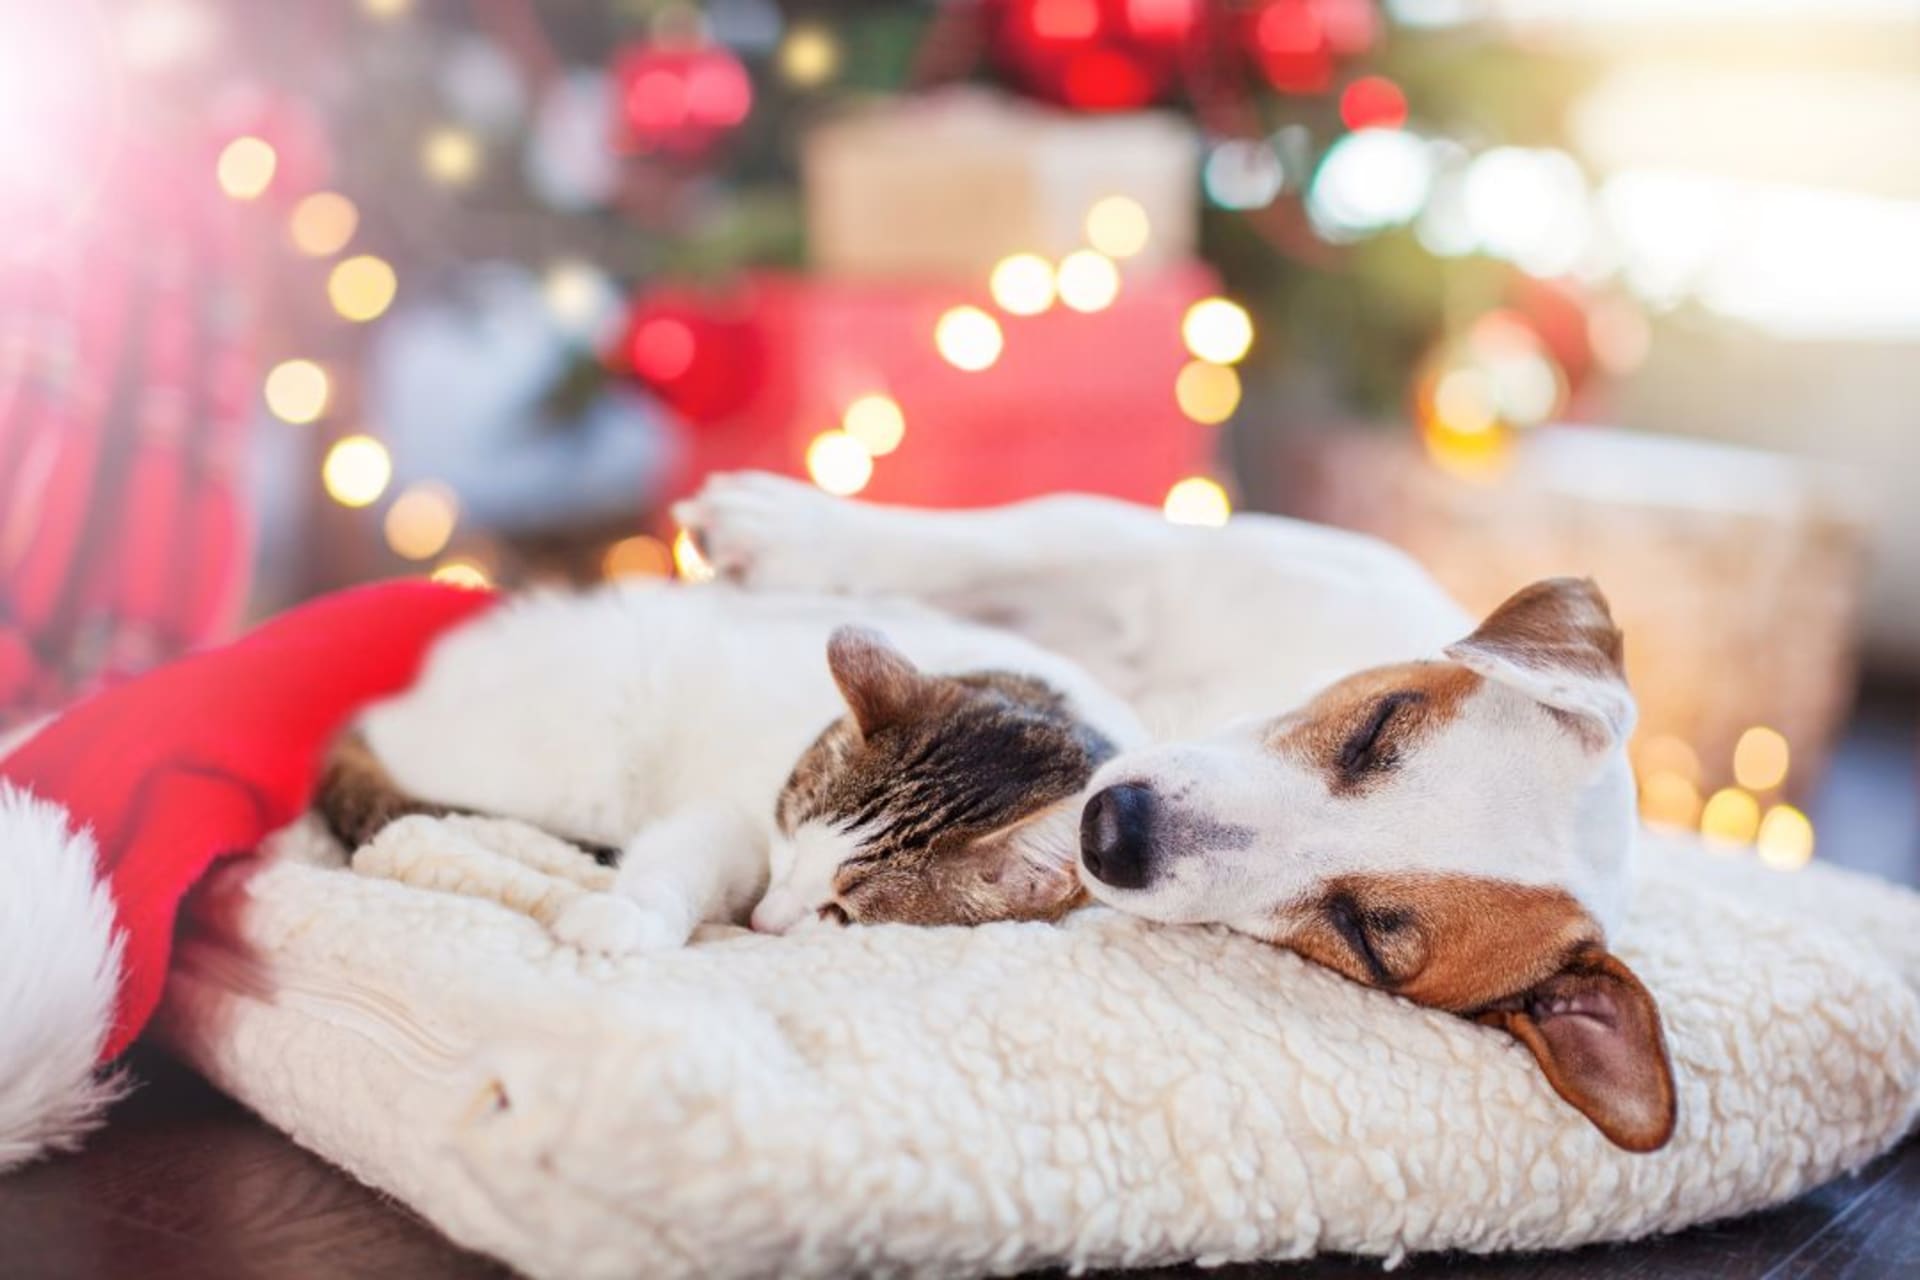 Darujte dokonalý spánek: Tipy na dárky pro blízké